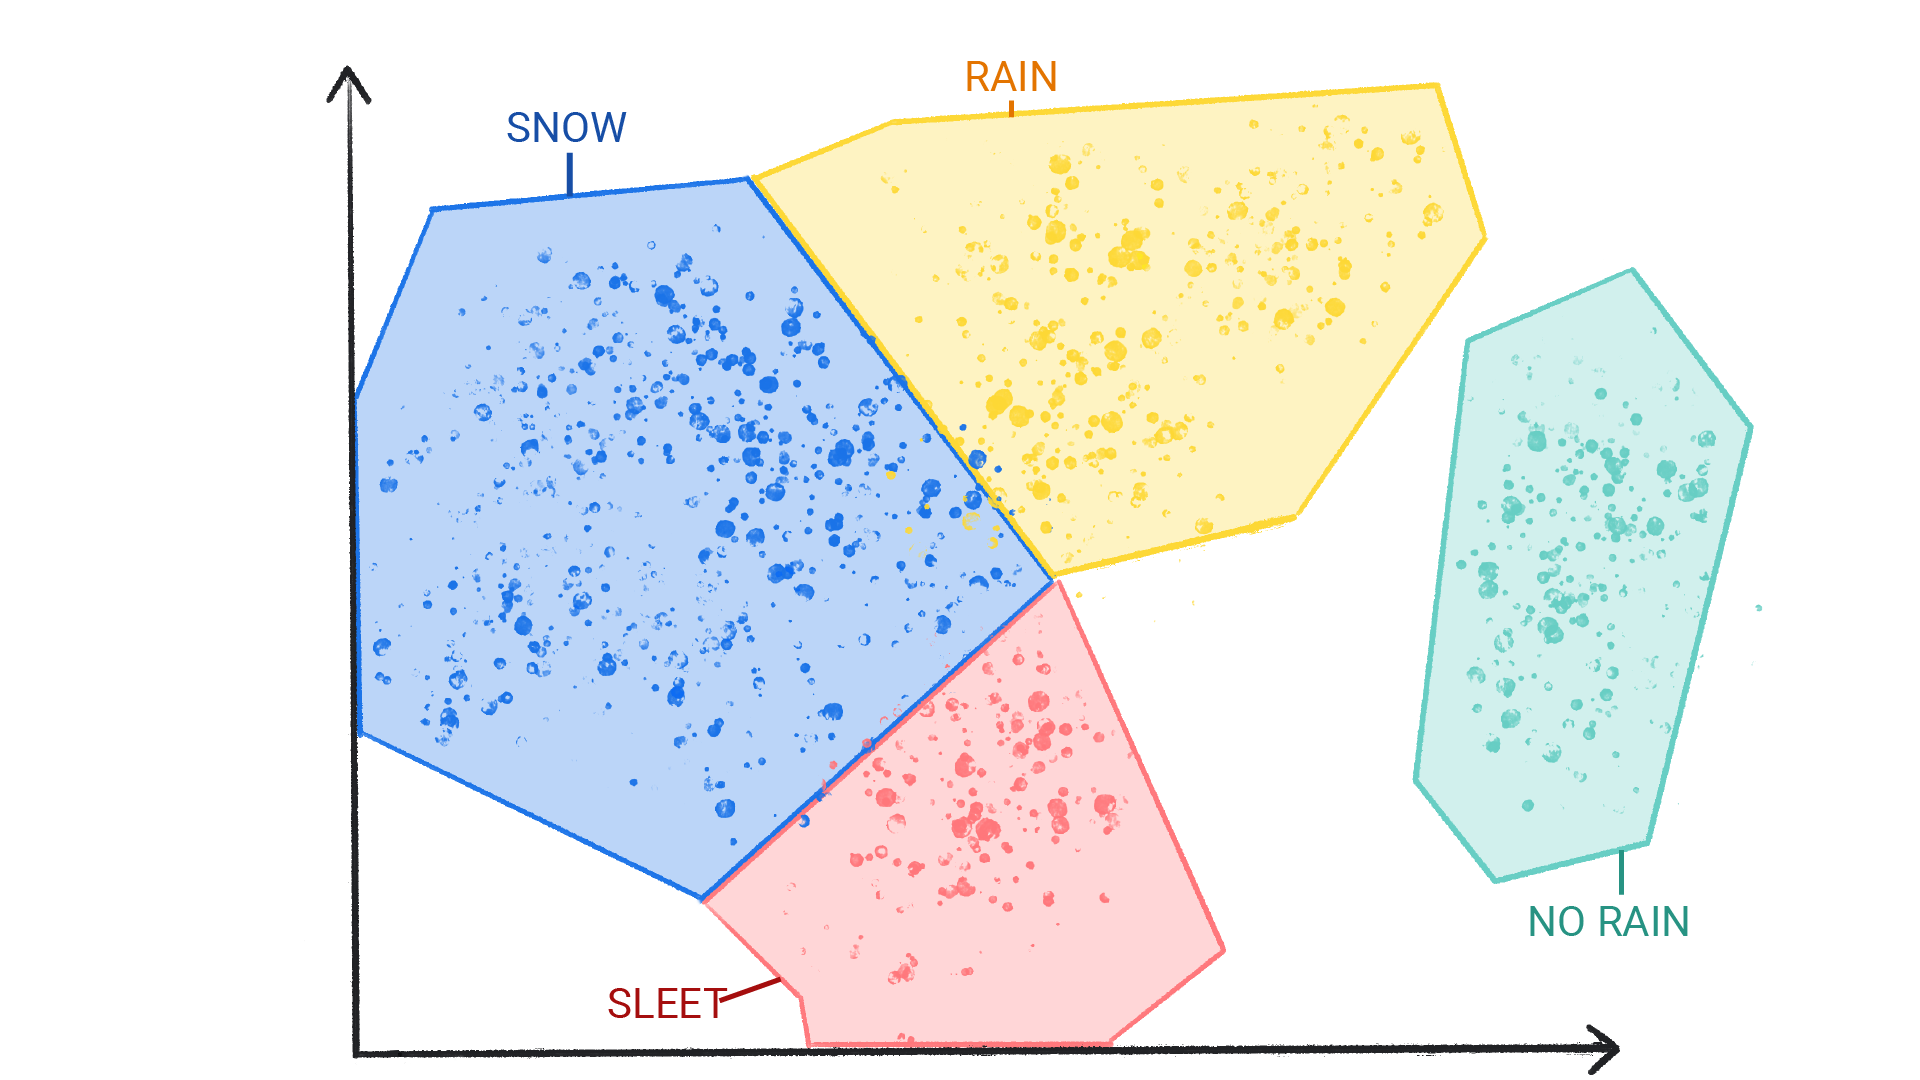 눈, 비, 우박, 비 오지 않음으로 라벨이 지정된 클러스터 내에 색상 점이 있고 도형으로 둘러싸여 서로 경계를 이루고 있는 이미지입니다.